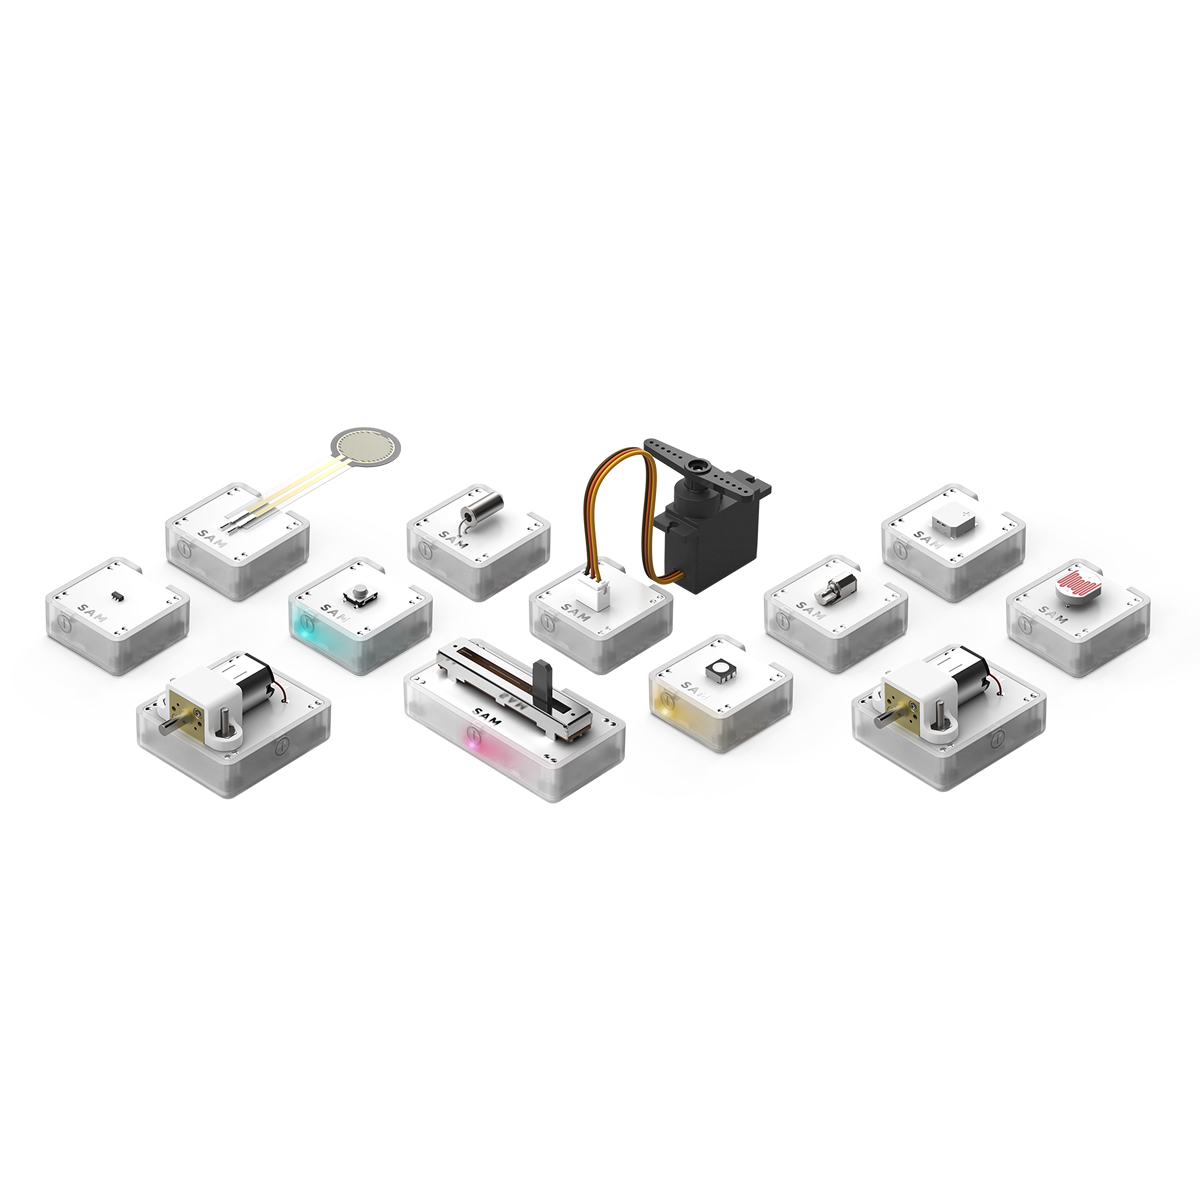 ブロックモジュール型の「SAM Labs」。ボタン、スライダー、各種センサー（傾き、圧力、光、温度、近接など）、モーター、ブザー、LEDライトなどさまざまなブロックがある